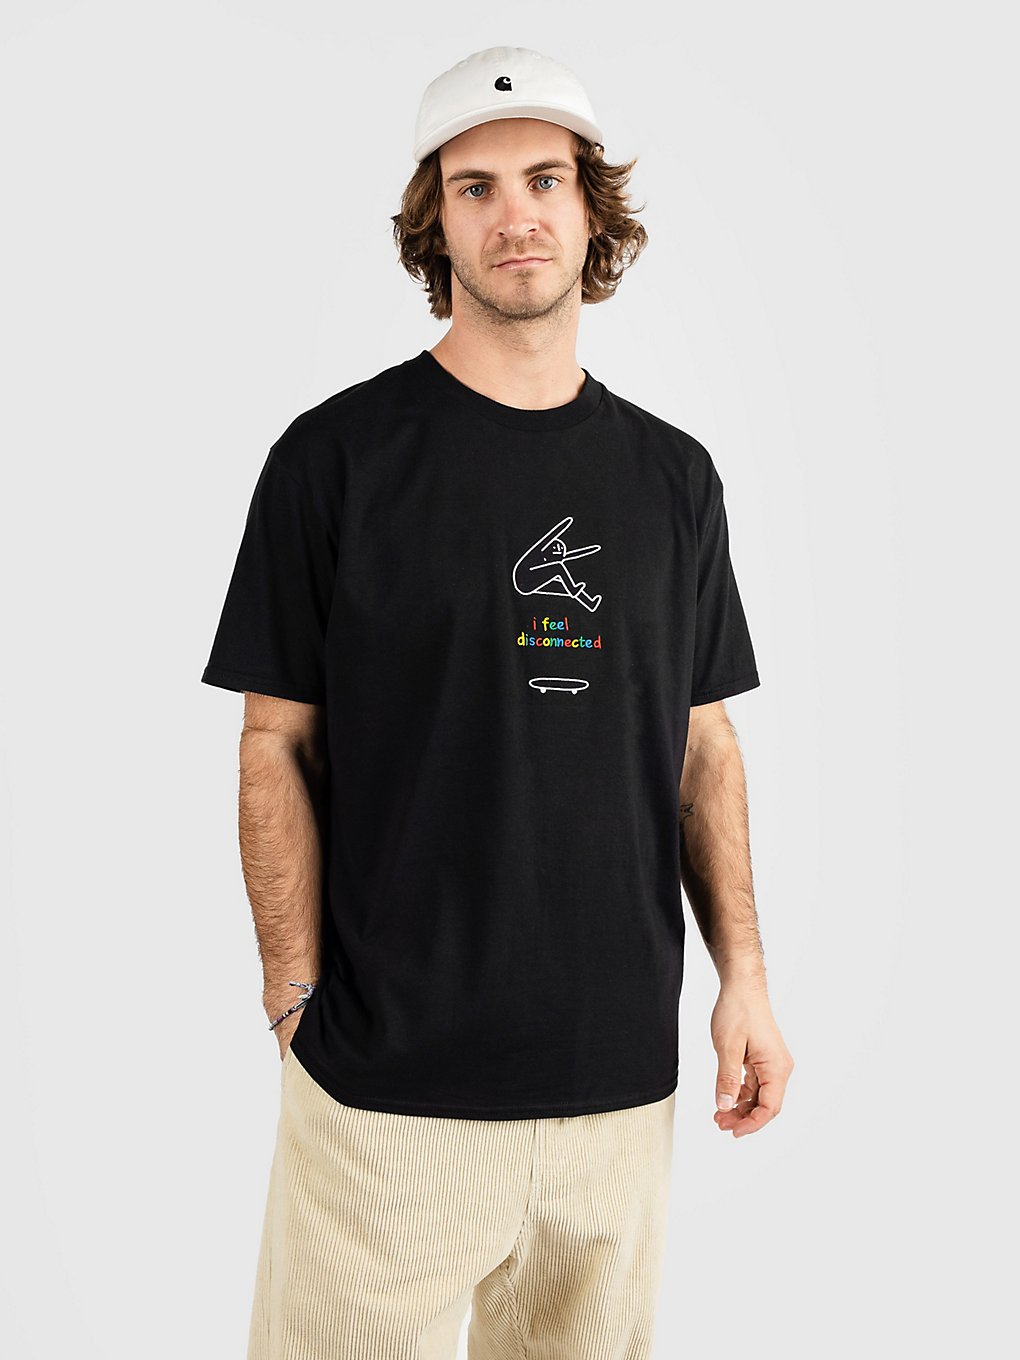 Leon Karssen Disconnected T-Shirt black kaufen